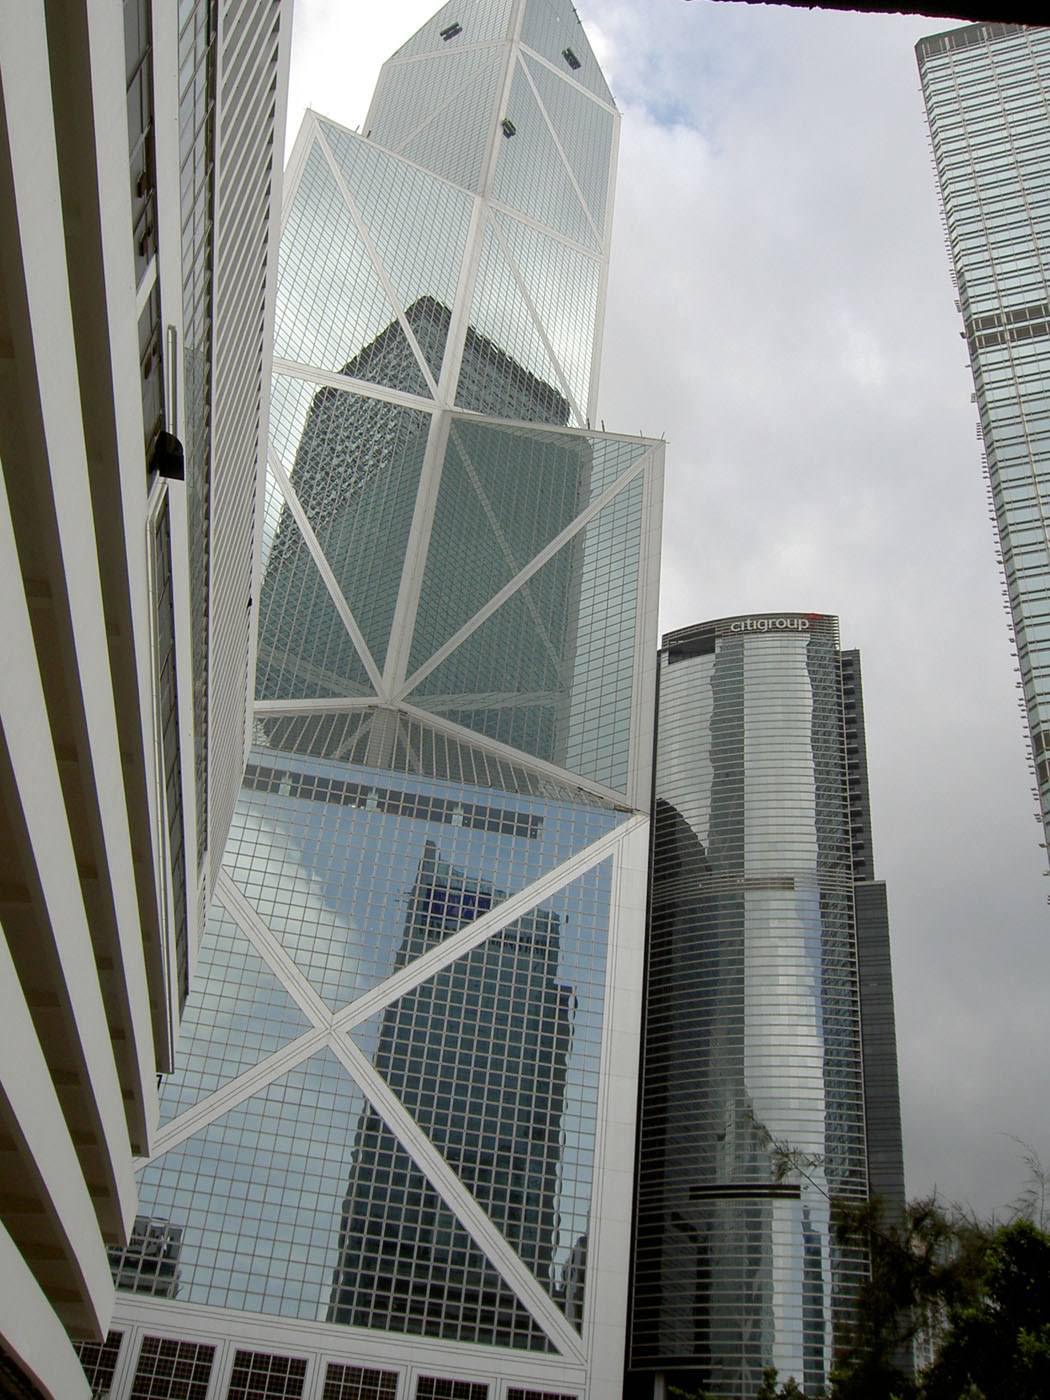 Hong Kong Bank of China and Citigroup towers